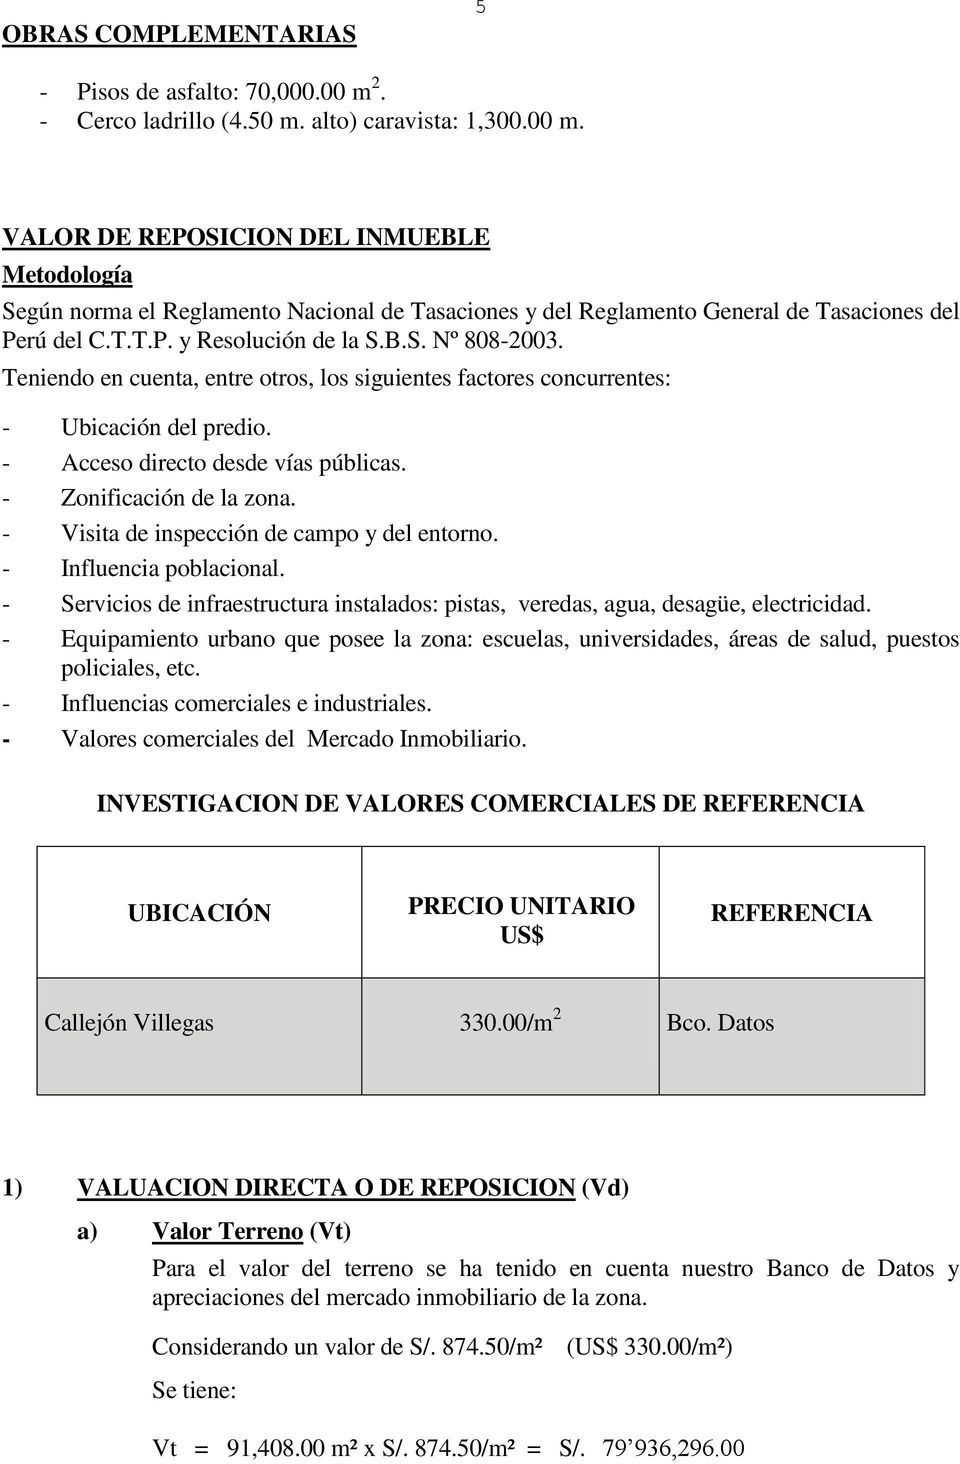 VALOR DE REPOSICION DEL INMUEBLE Metodología Según norma el Reglamento Nacional de Tasaciones y del Reglamento General de Tasaciones del Perú del C.T.T.P. y Resolución de la S.B.S. Nº 808-2003.